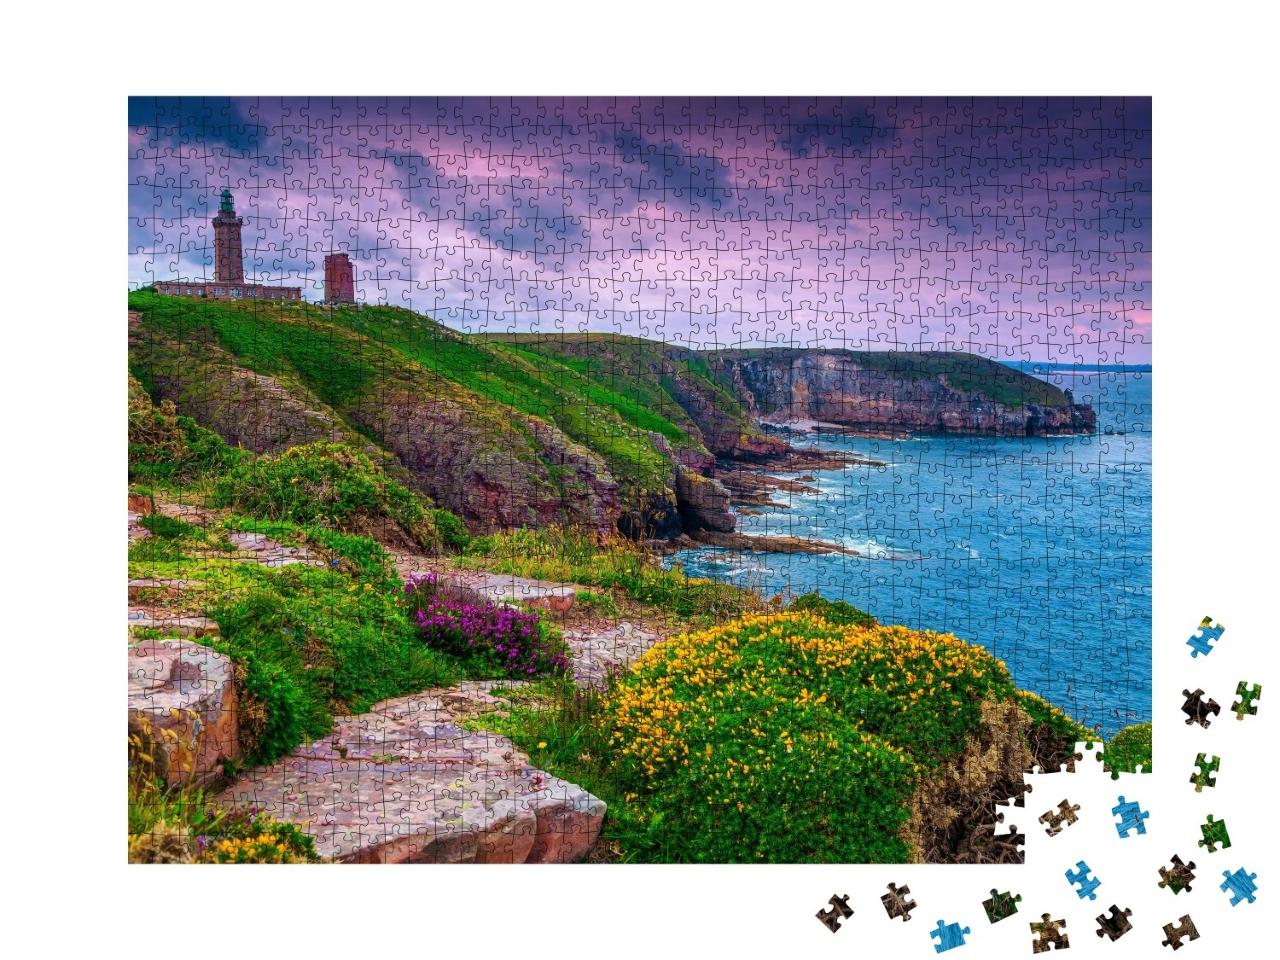 Puzzle de 1000 pièces « Phare du Cap Fréhel sur la côte rocheuse de Bretagne, France, »